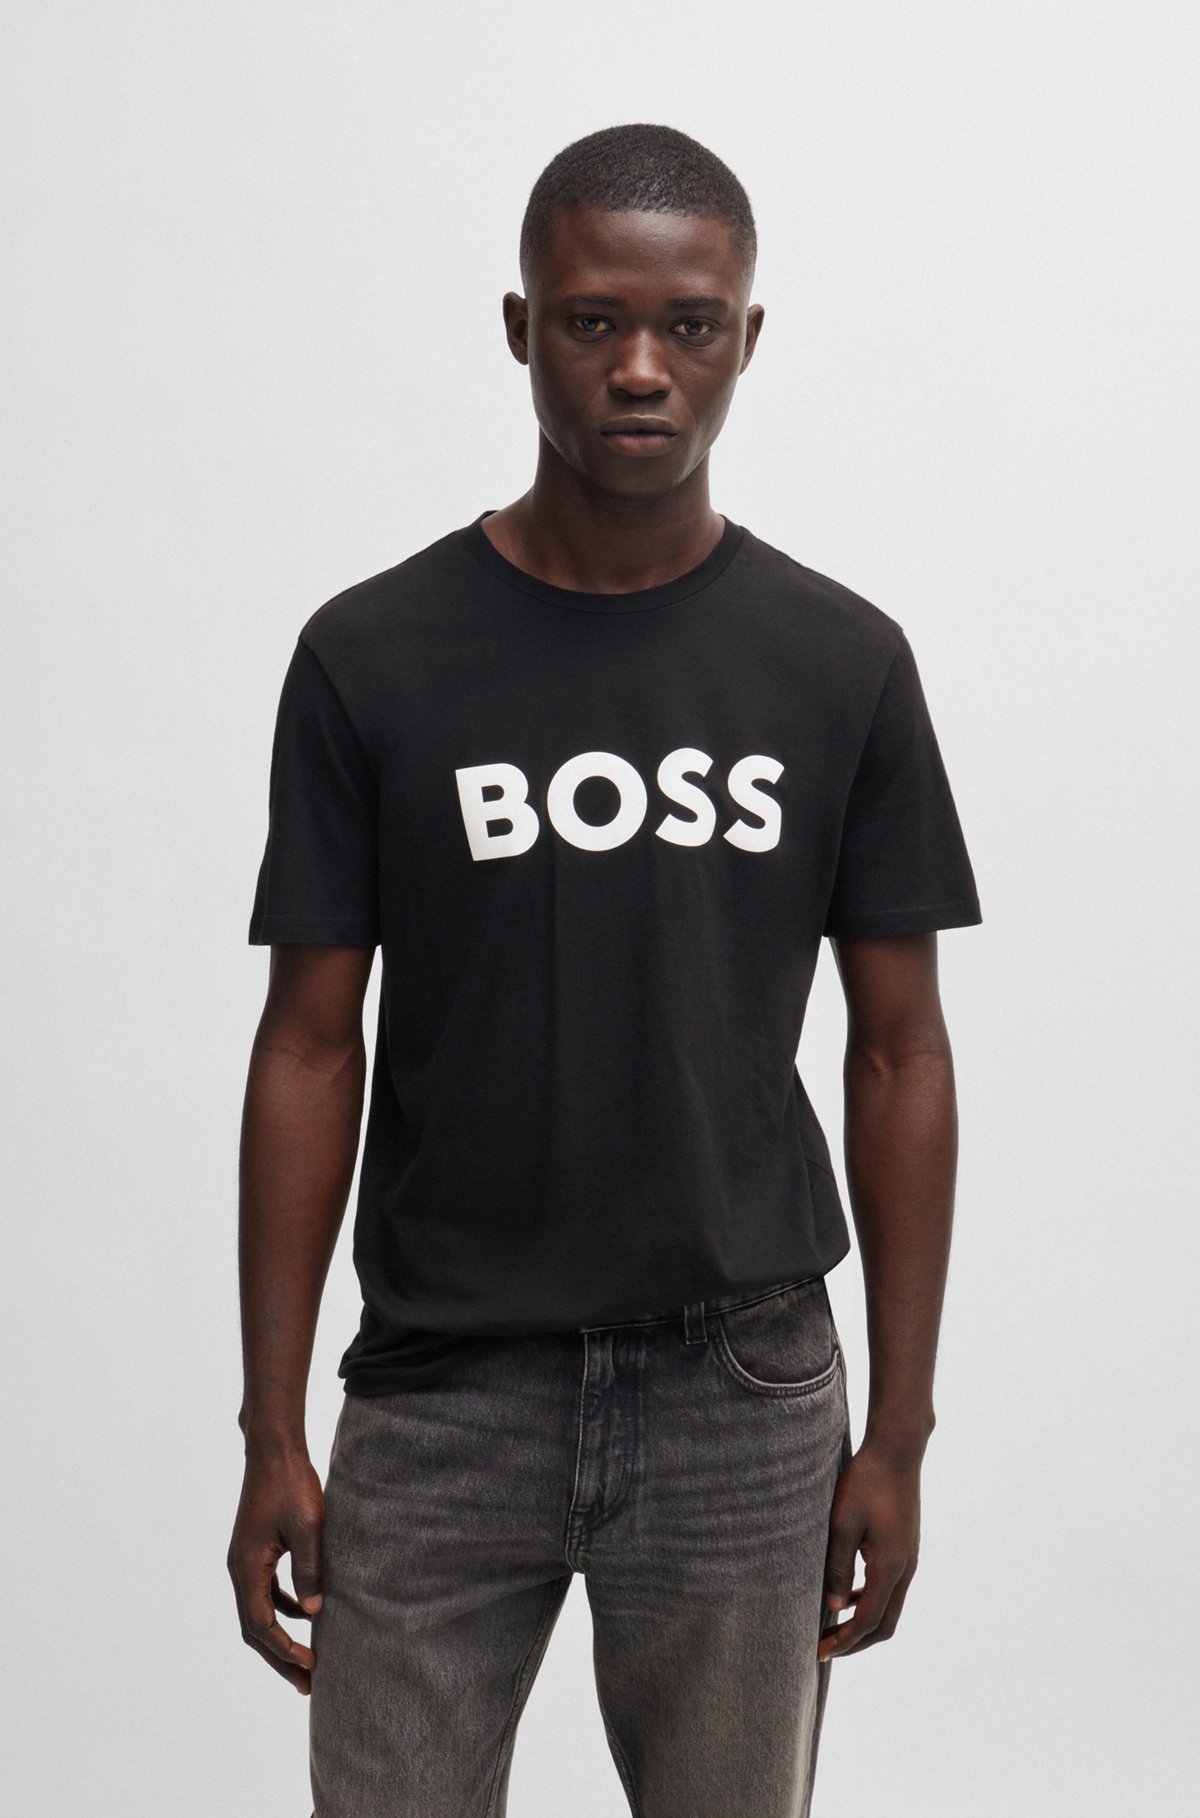 BOSS - コットンジャージー Tシャツ ラバープリントロゴ付き